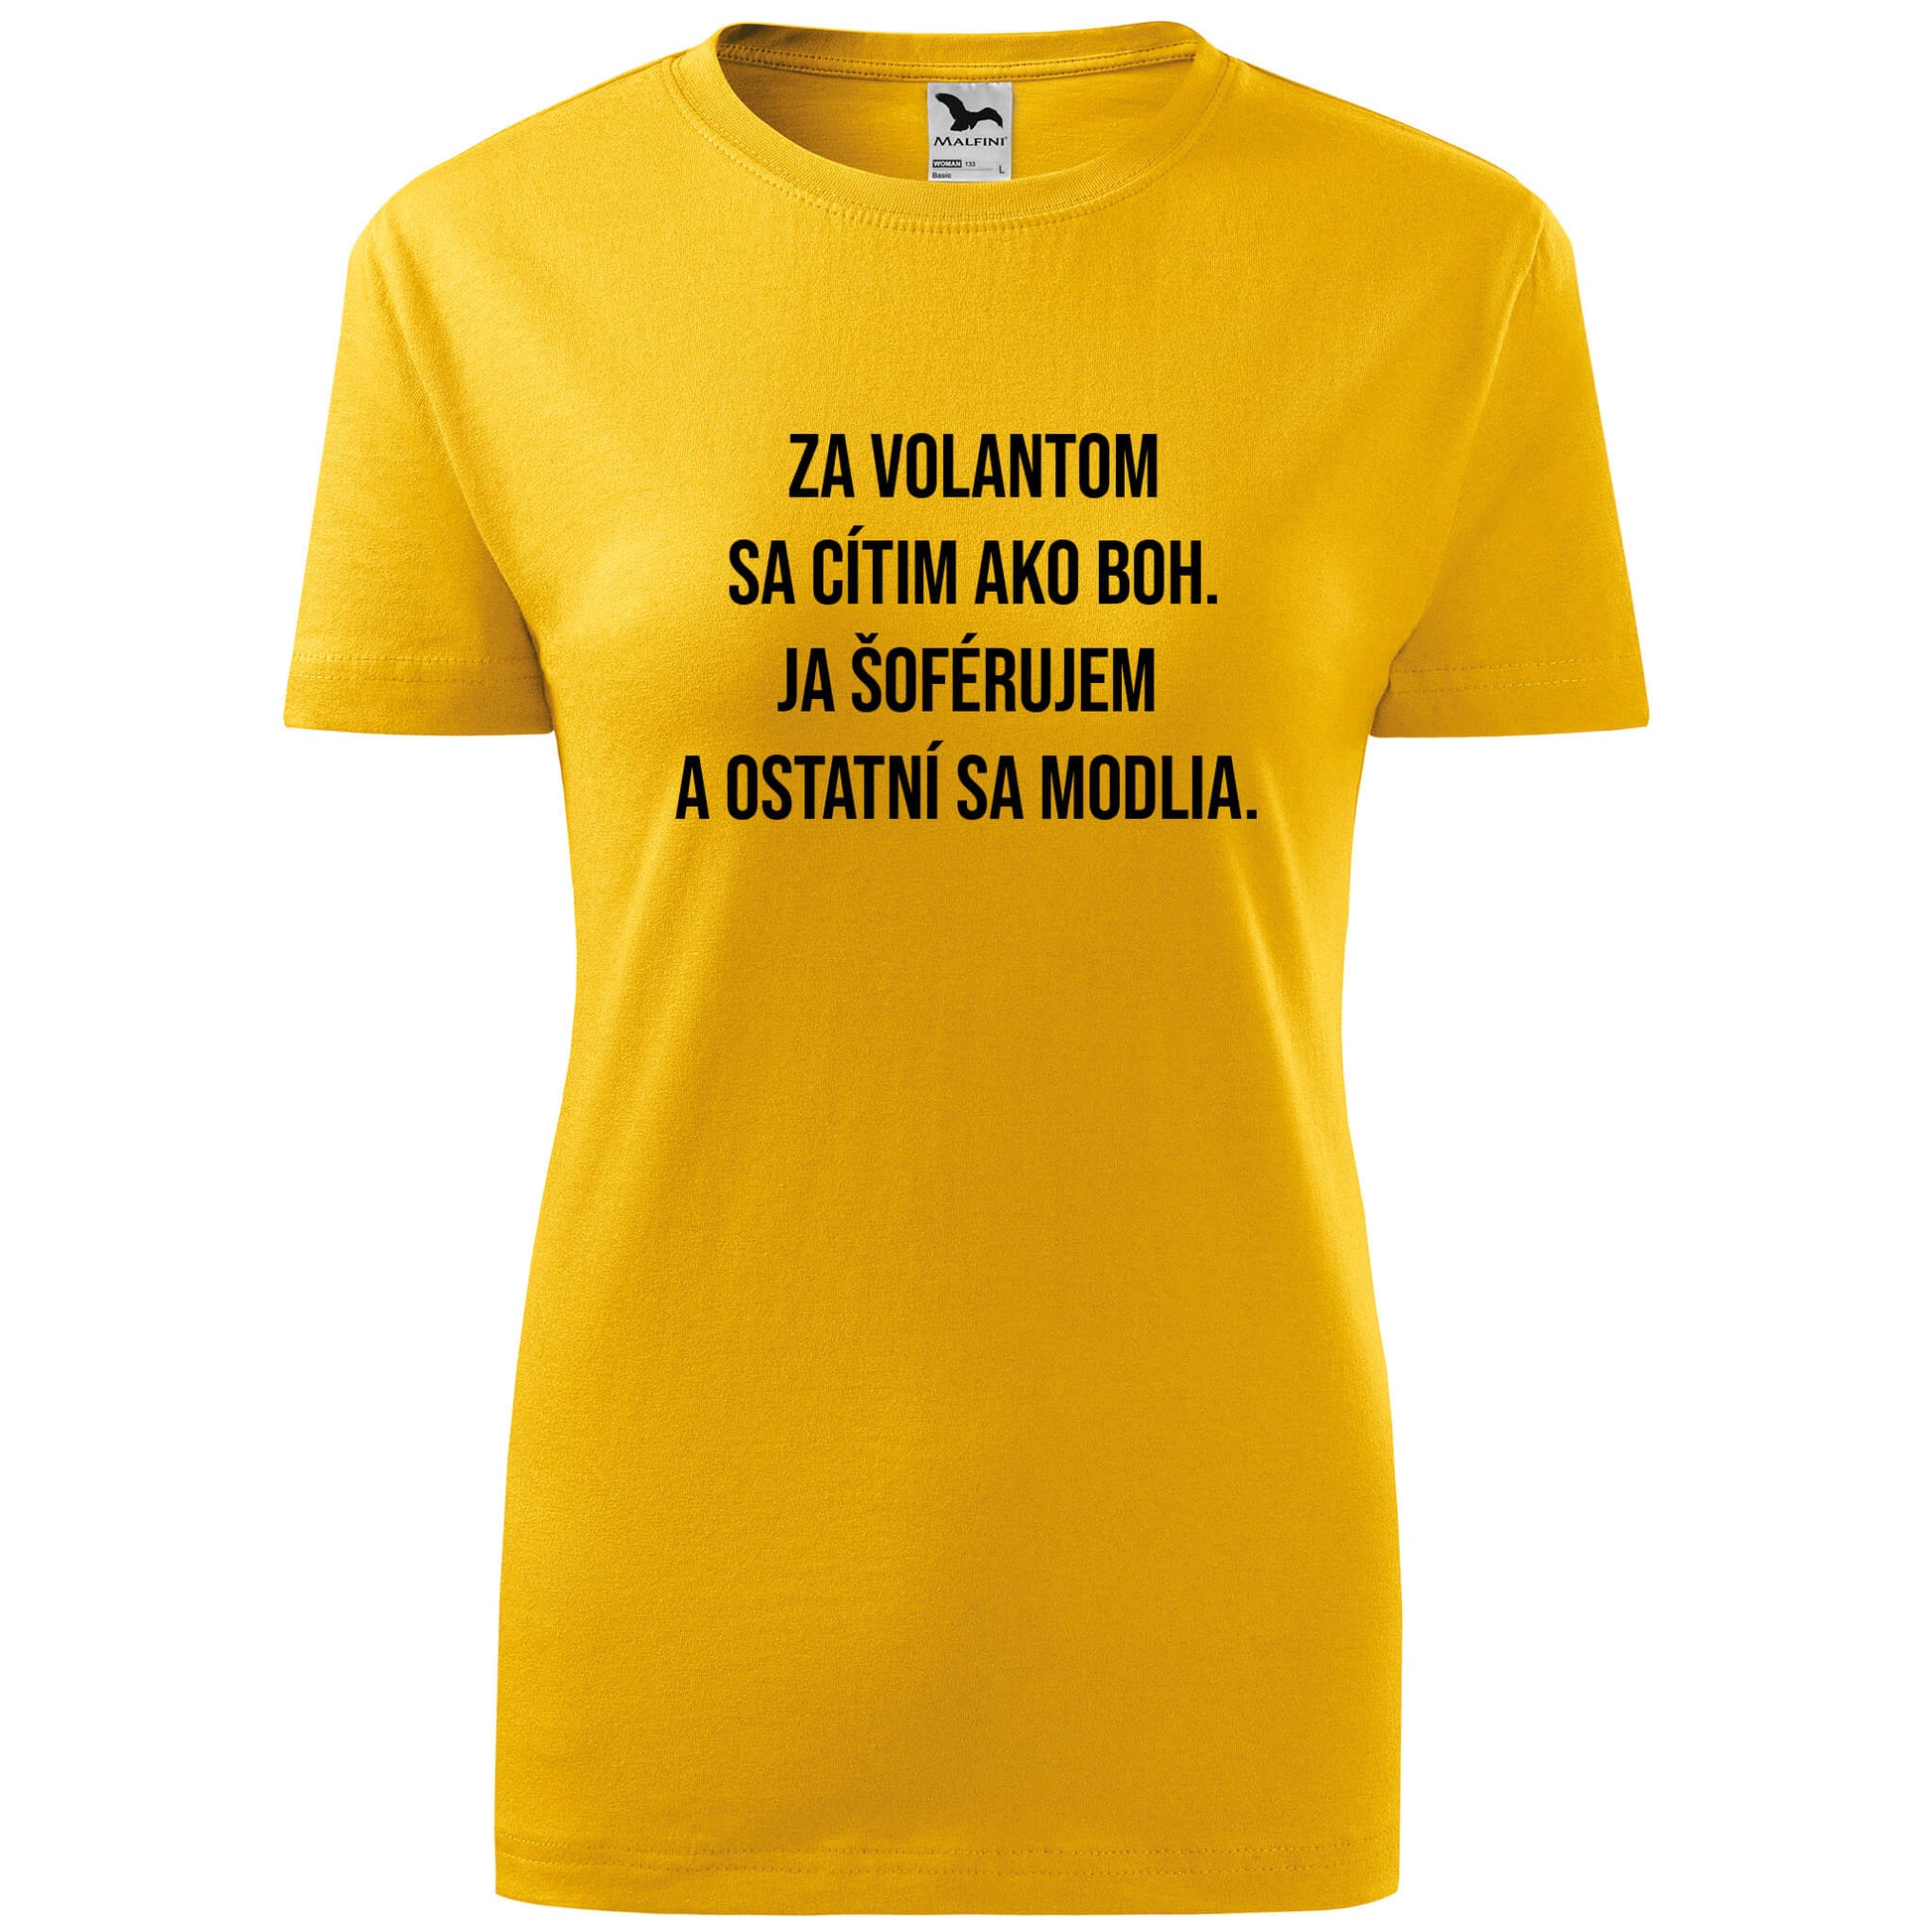 T-shirt - Za volantom sa cítim ako boh - rvdesignprint